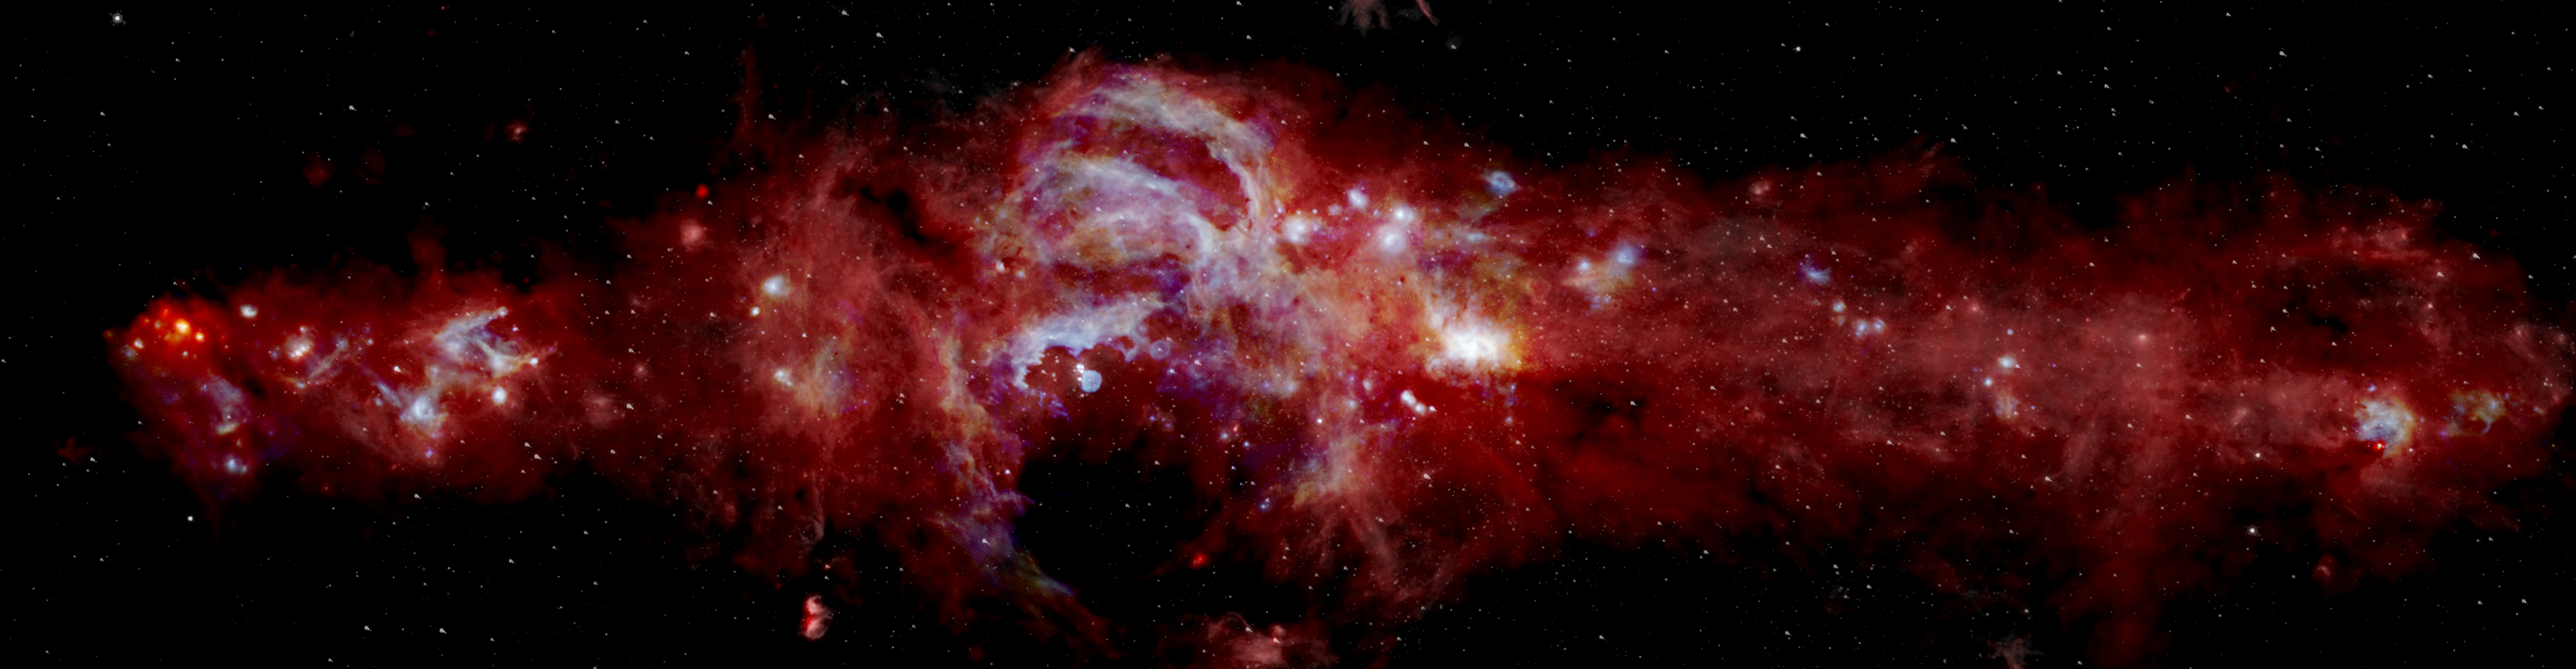 Revela NASA imagen detallada del centro de la Vía Lactea